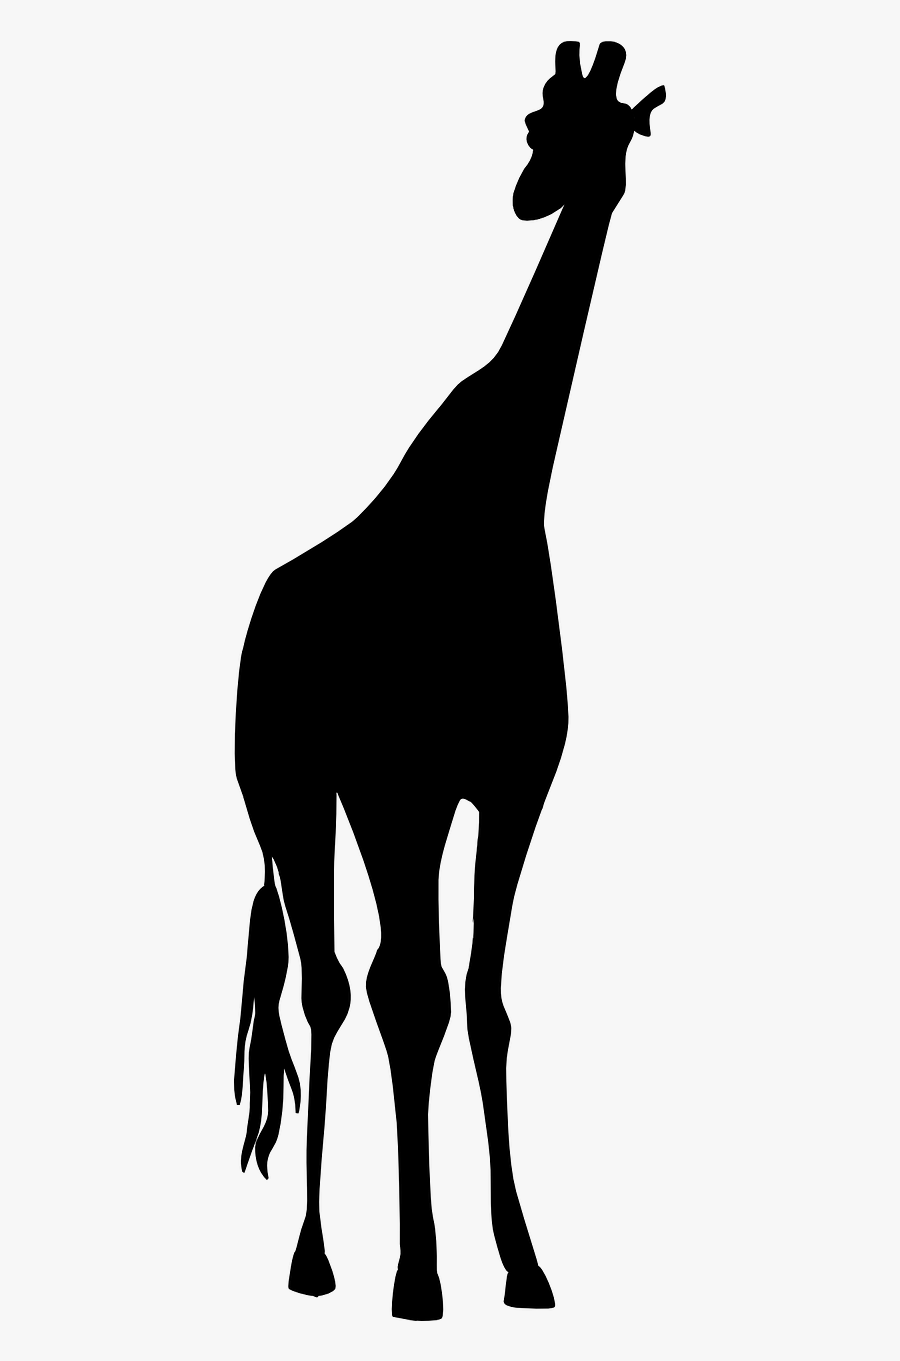 Giraffe Safari Black Free Picture - Jirafa Blanco Y Negro, Transparent Clipart